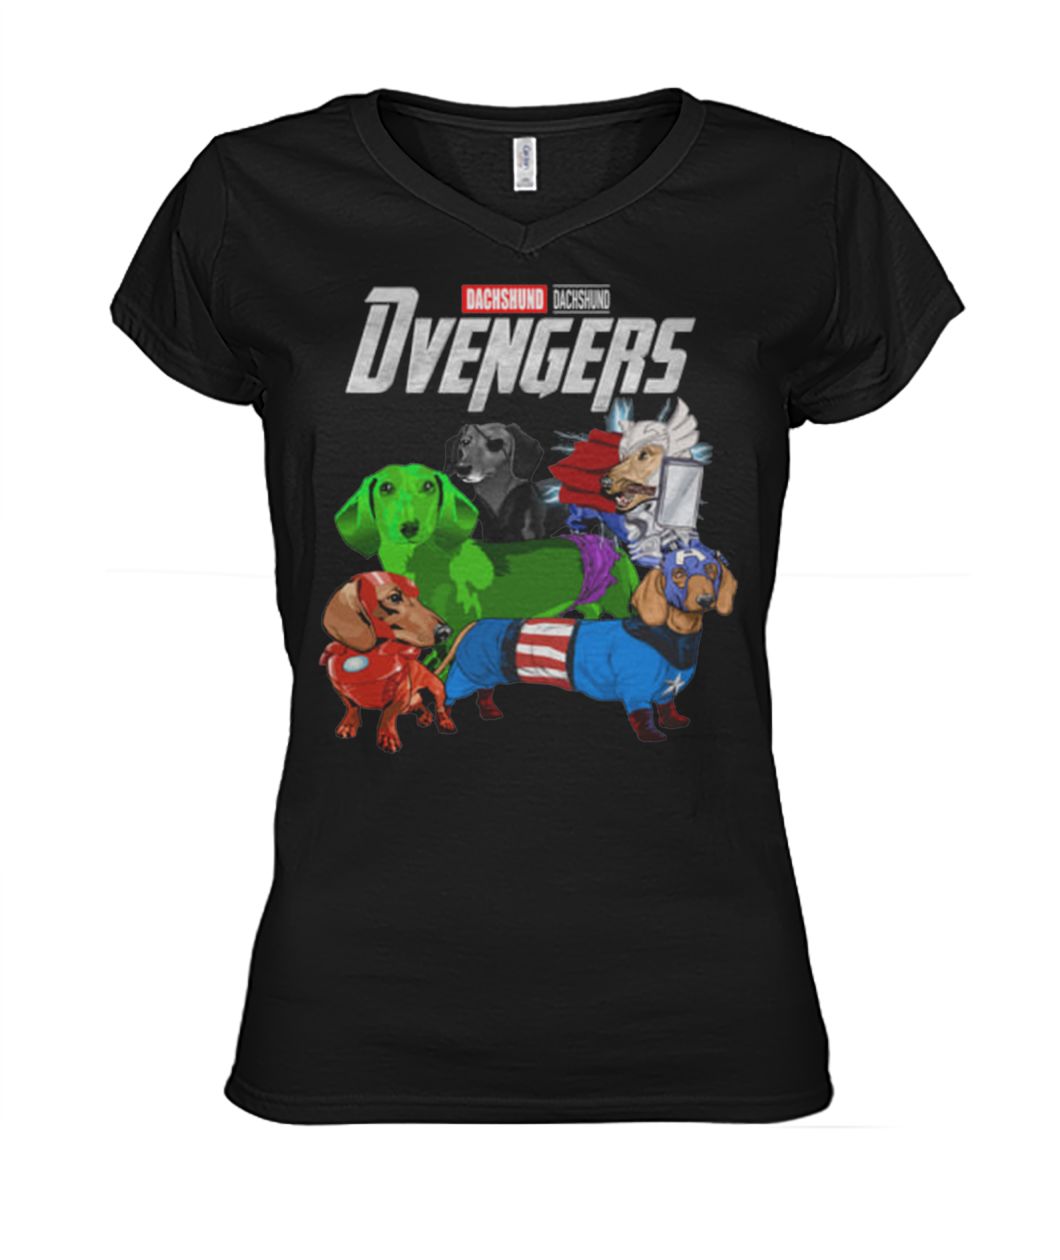 Marvel avengers endgame Dvengers dachshund women's v-neck